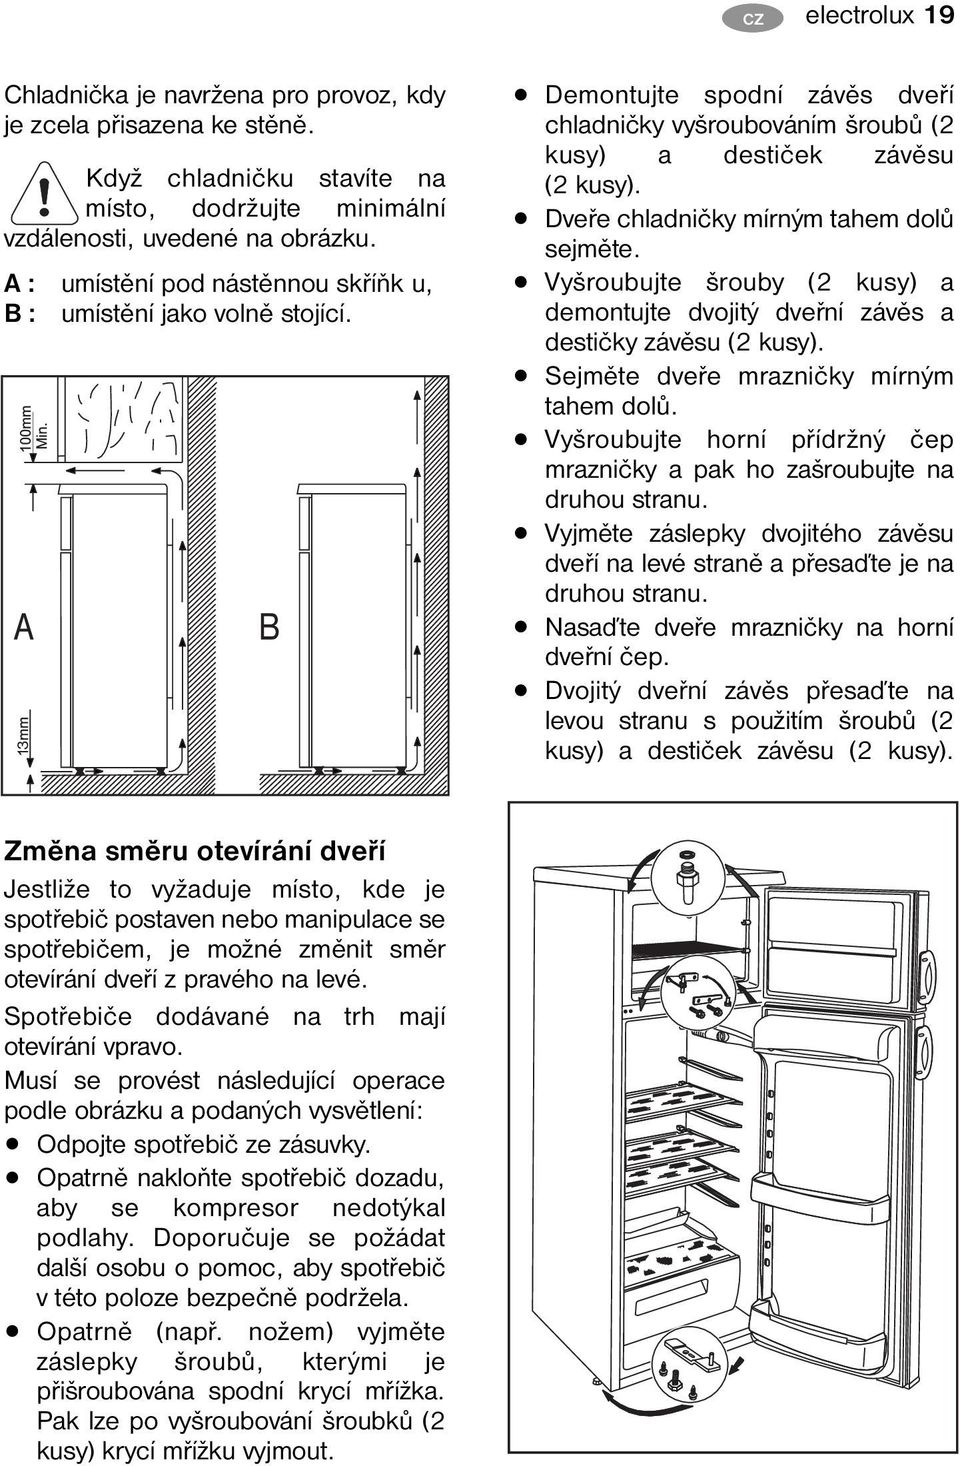 Dveře chladničky mírným tahem dolů sejměte. Vyšroubujte šrouby (2 kusy) a demontujte dvojitý dveřní závěs a destičky závěsu (2 kusy). Sejměte dveře mrazničky mírným tahem dolů.